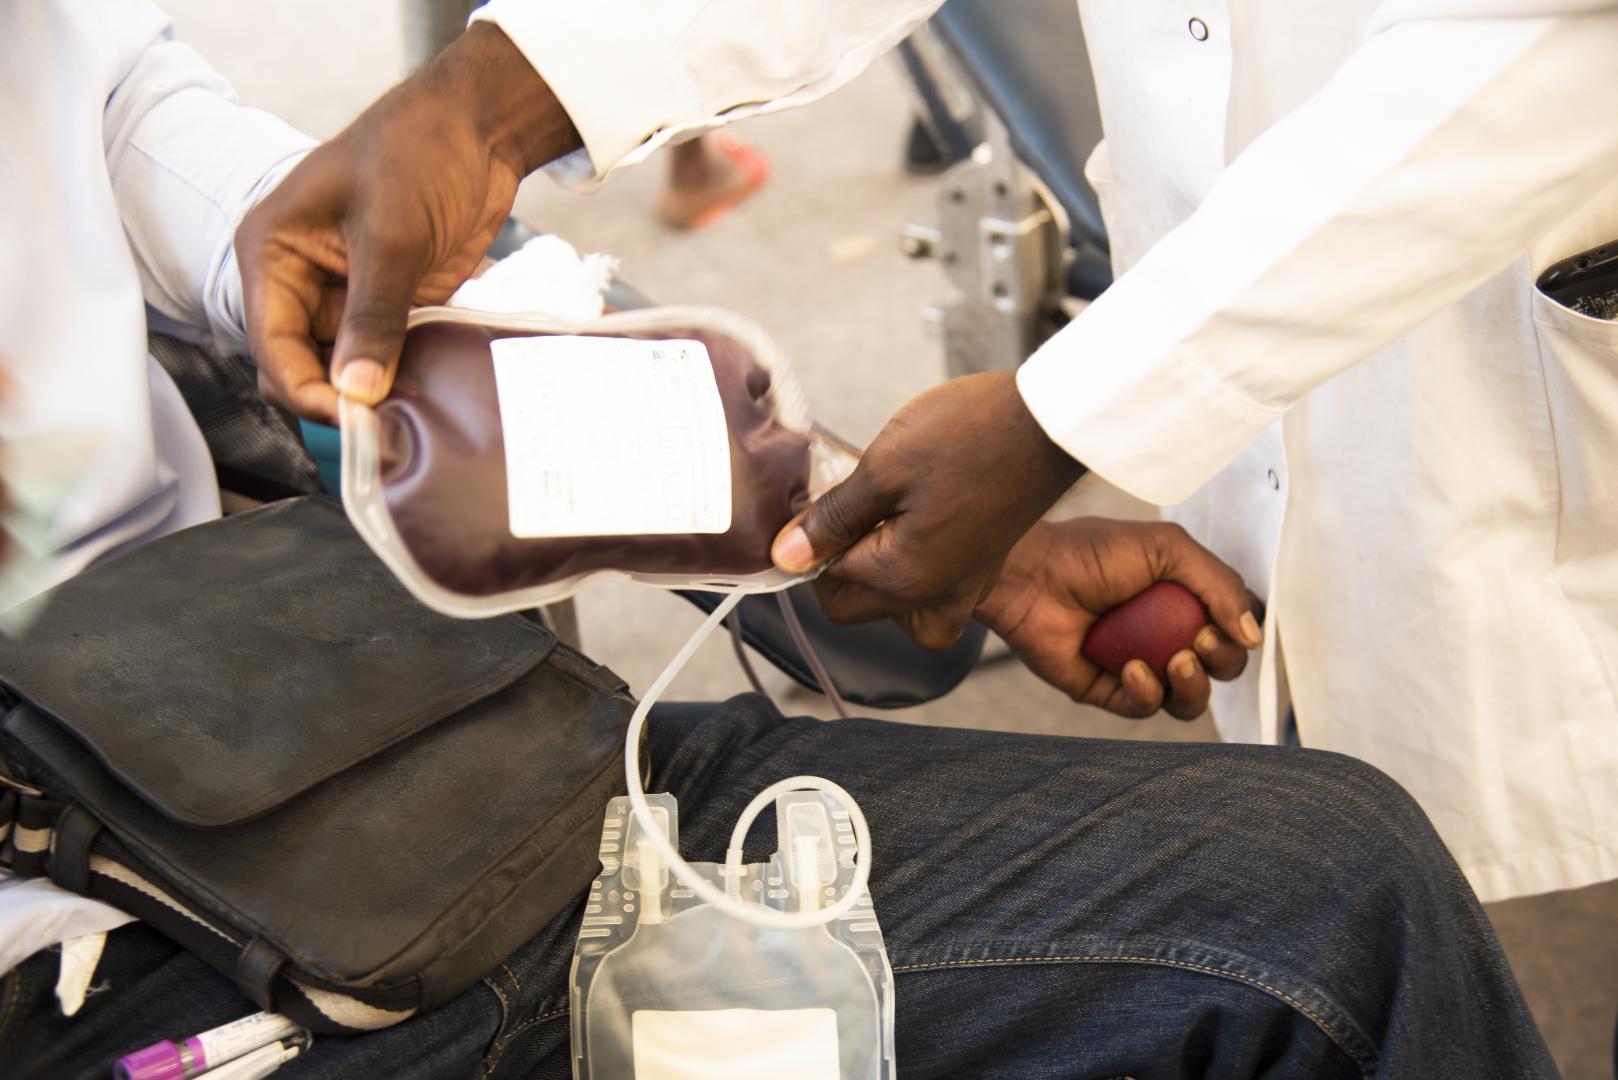 Afrique subsaharienne : approvisionner le sang pour mieux traiter les hémorragies maternelles